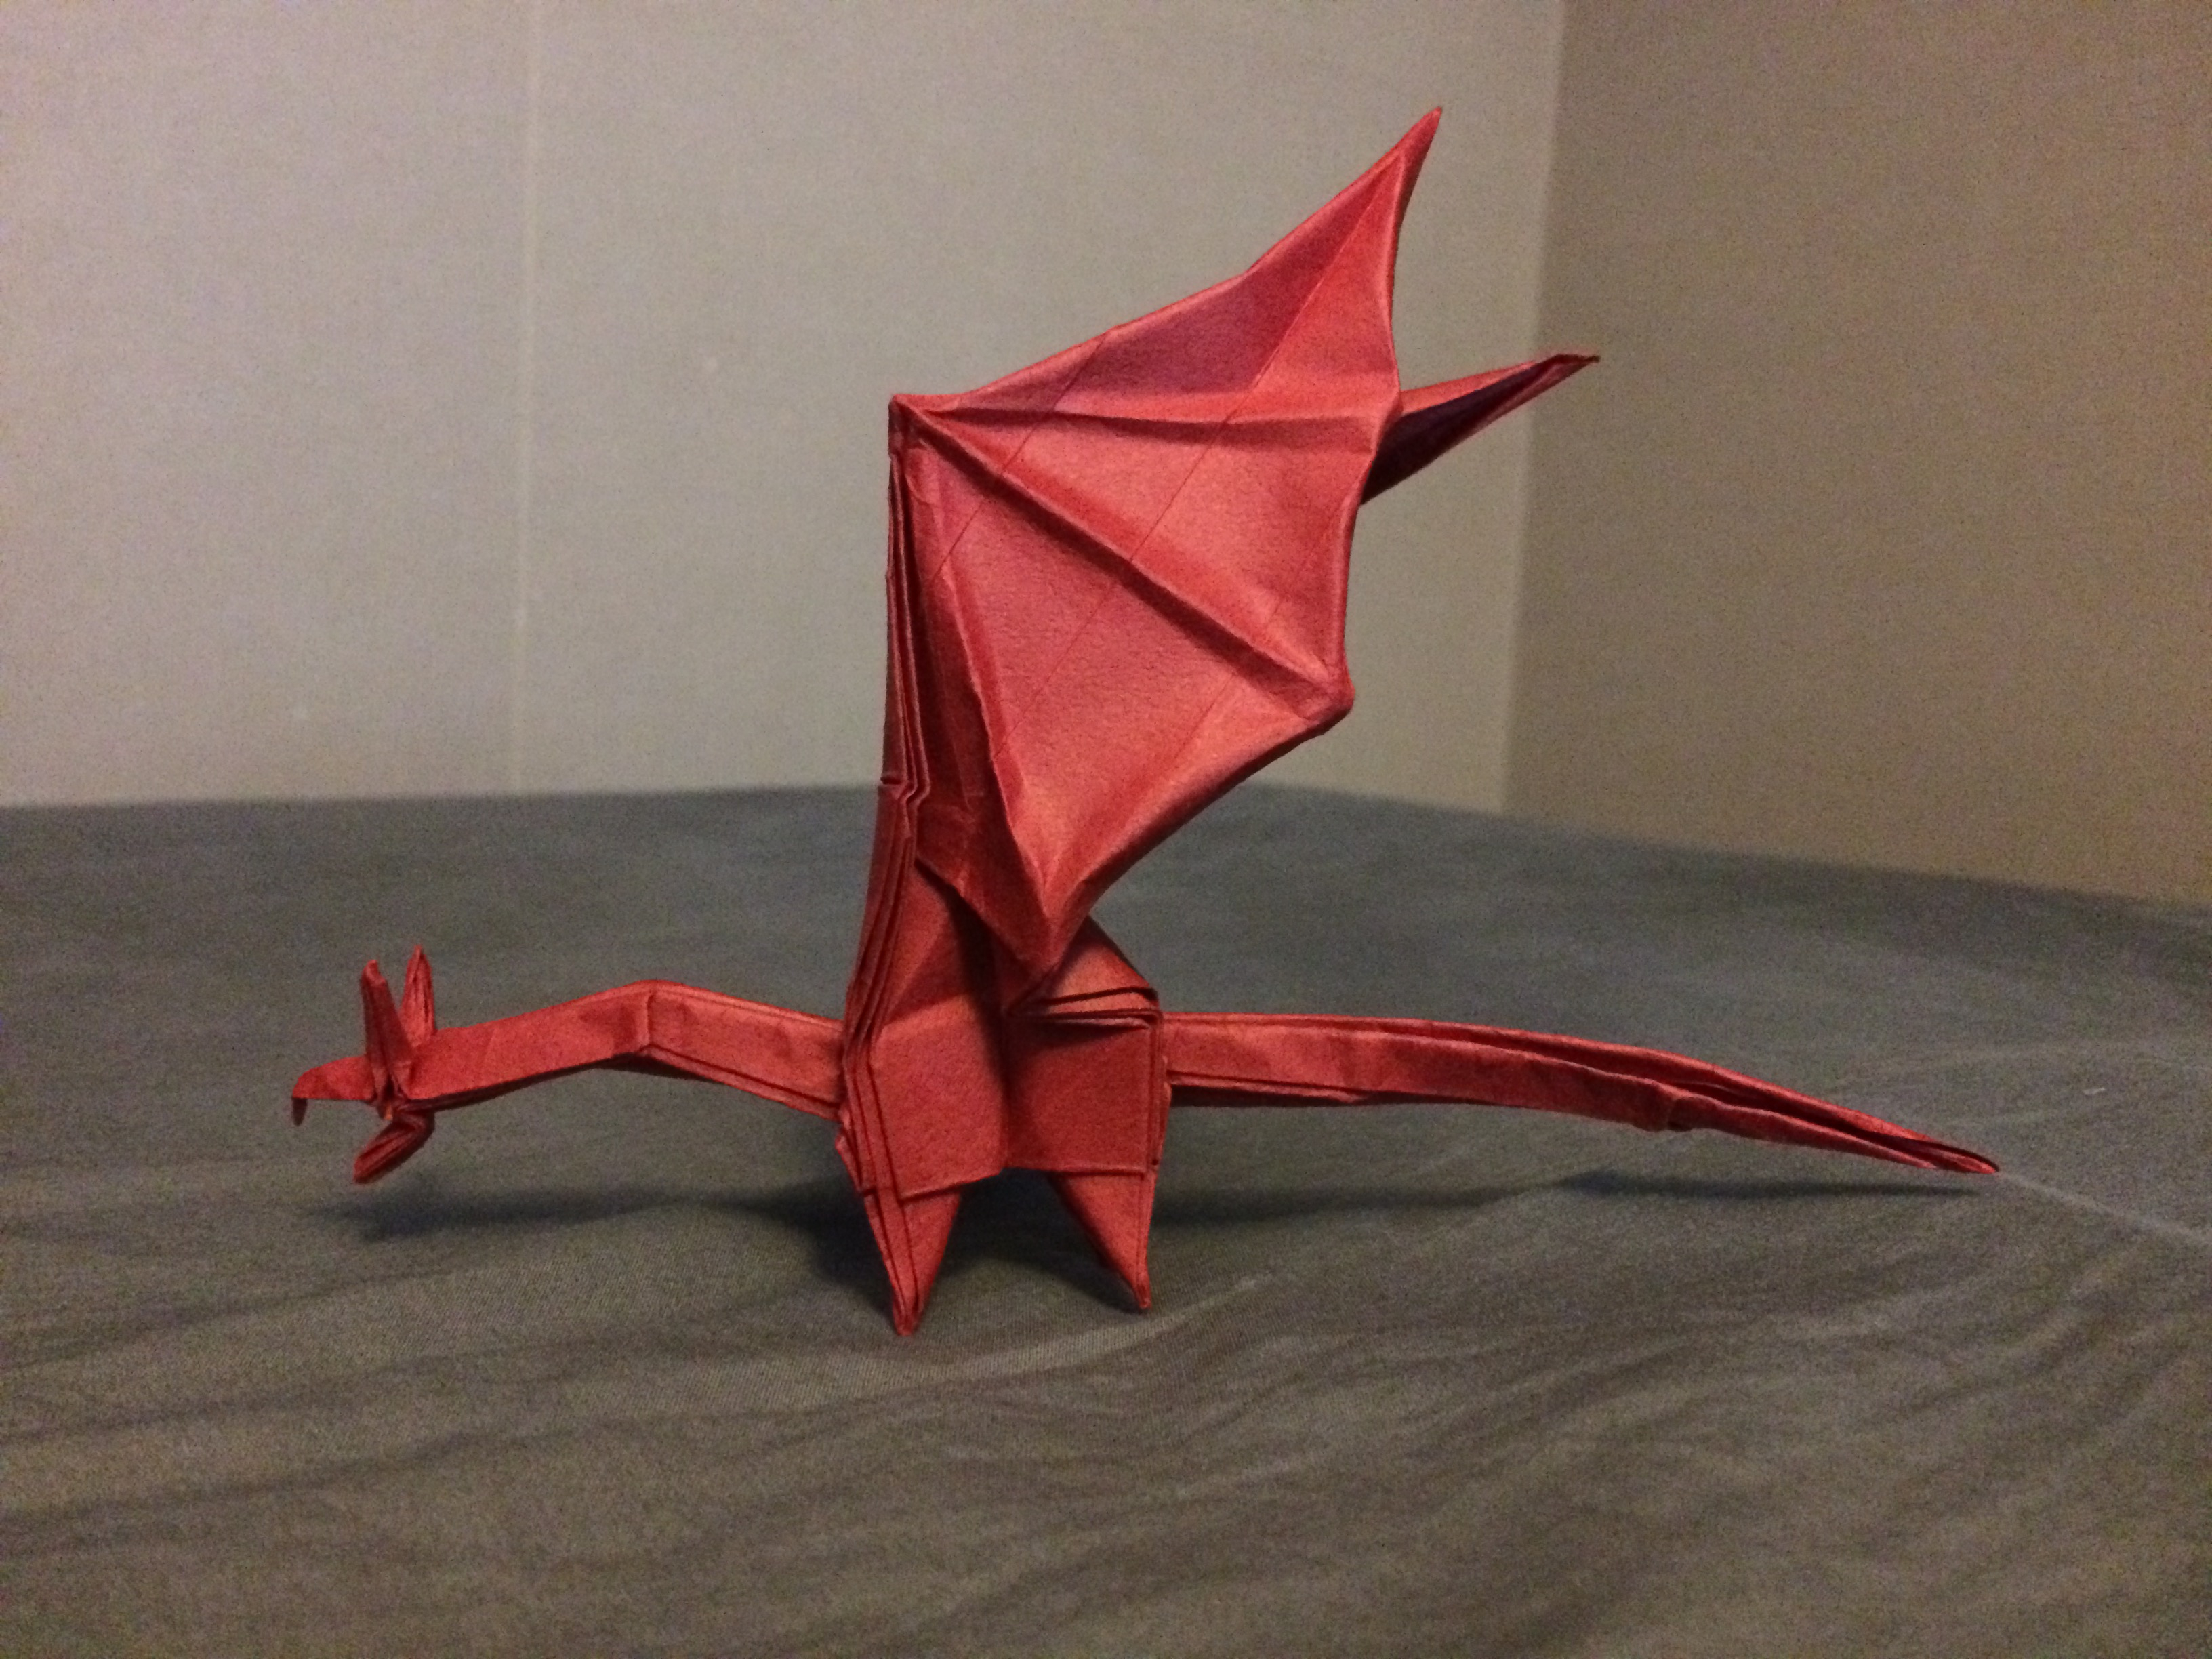 Origami Simple Dragon Shuki Kato Simple Dragon Designed Shuki Kato Album On Imgur